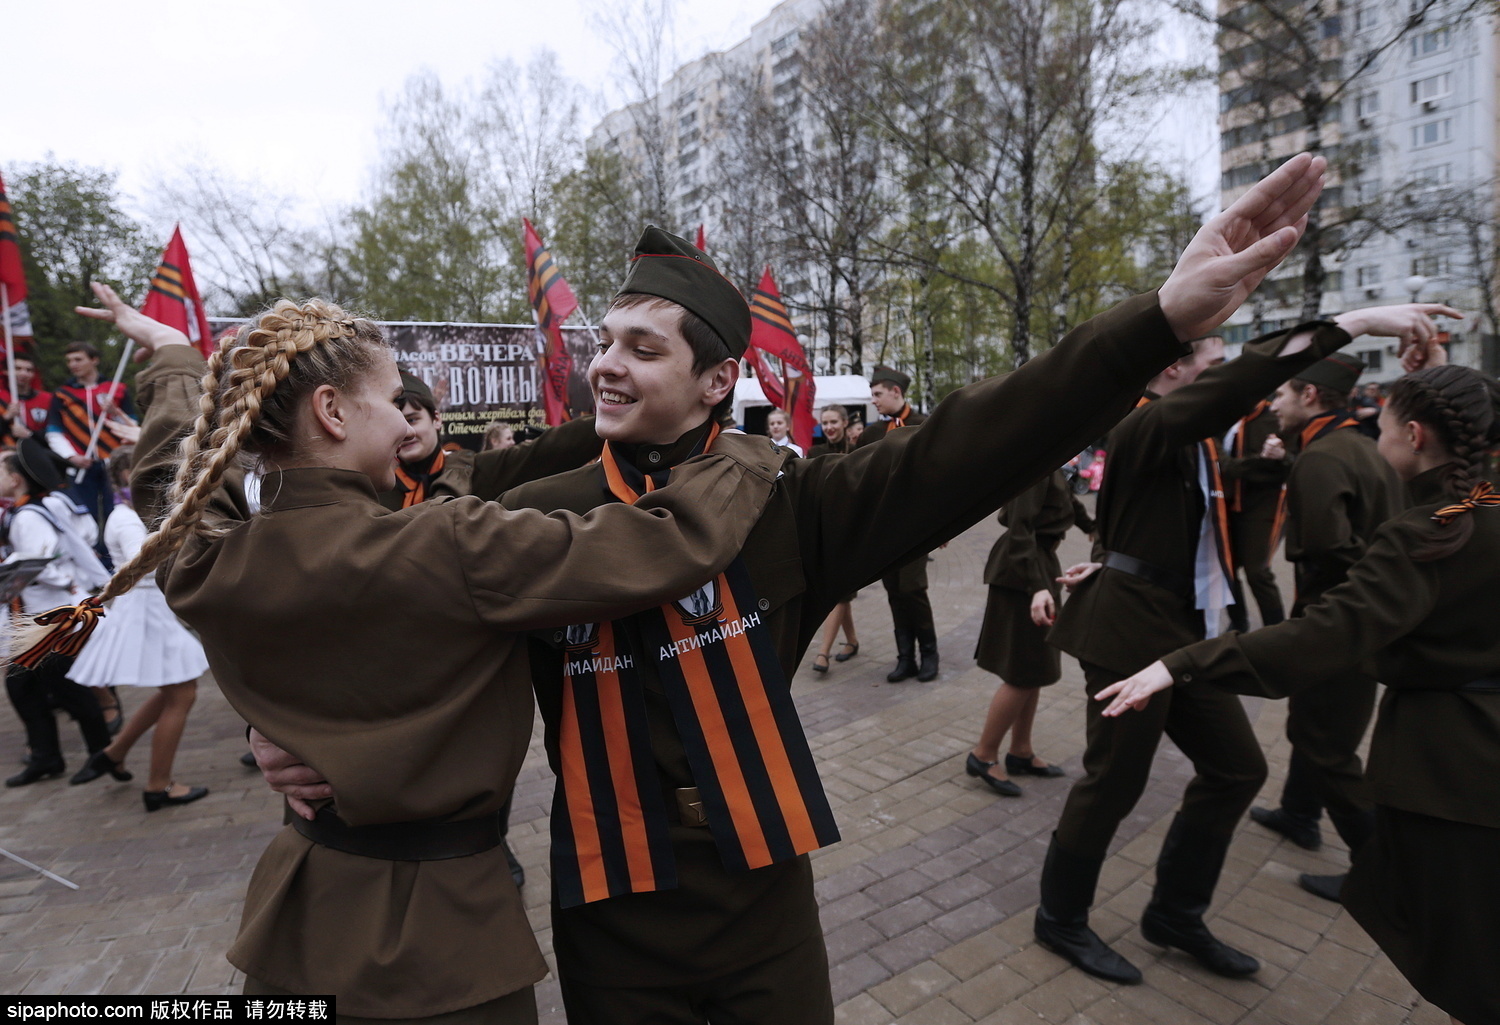 俄罗斯民众穿二战服饰现身街头载歌载舞玩快闪